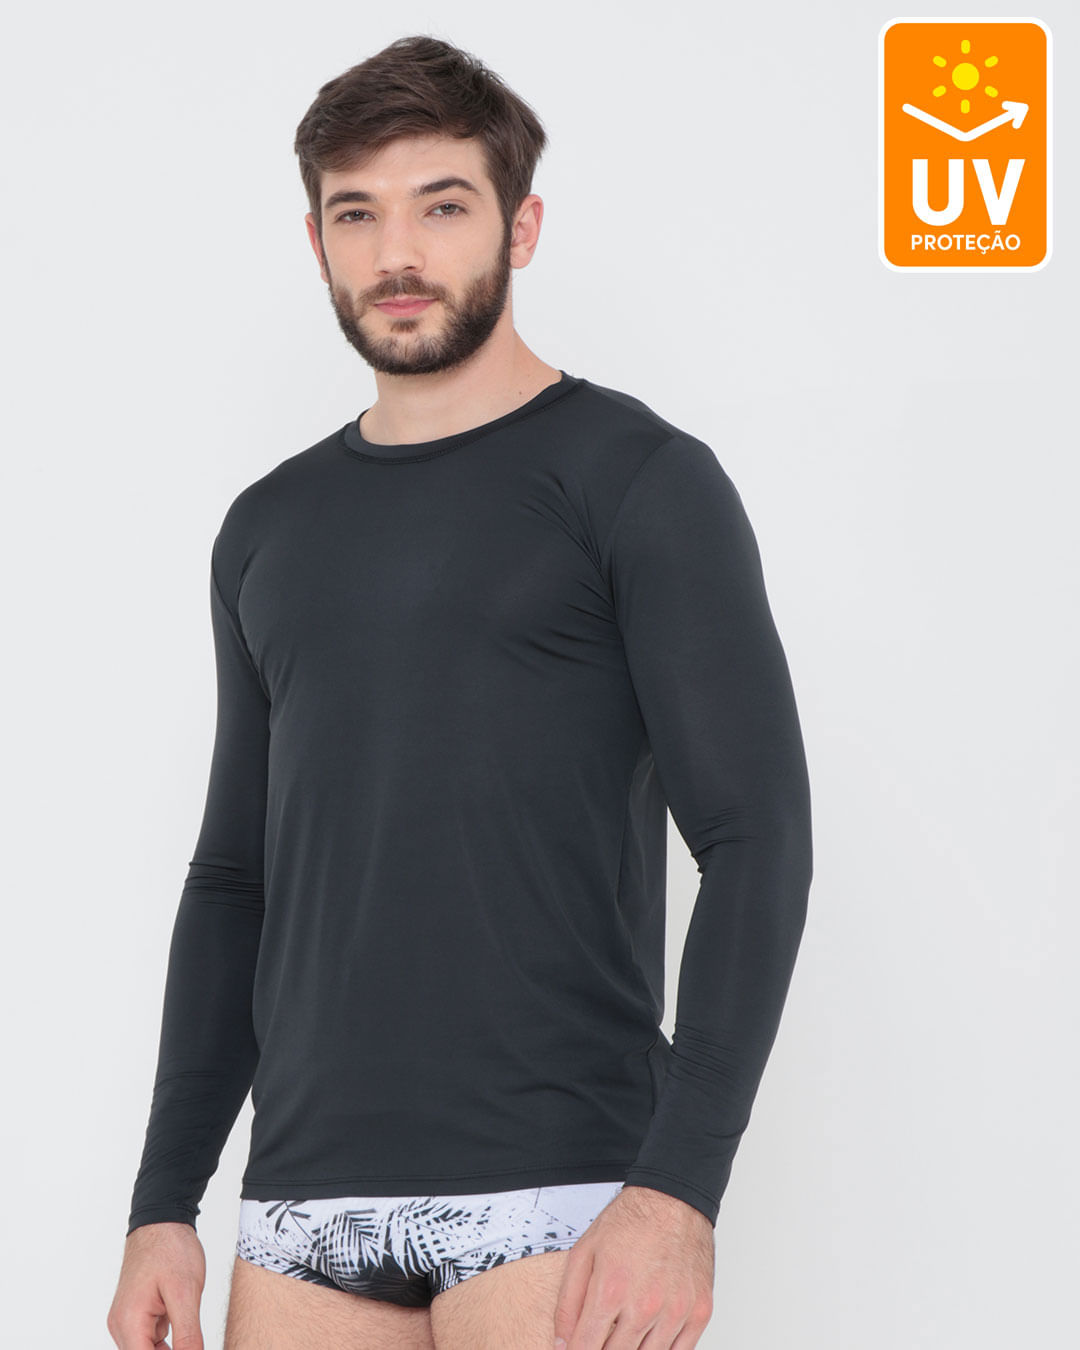 Camiseta-Manga-Longa-Protecao-UV-50-Preto